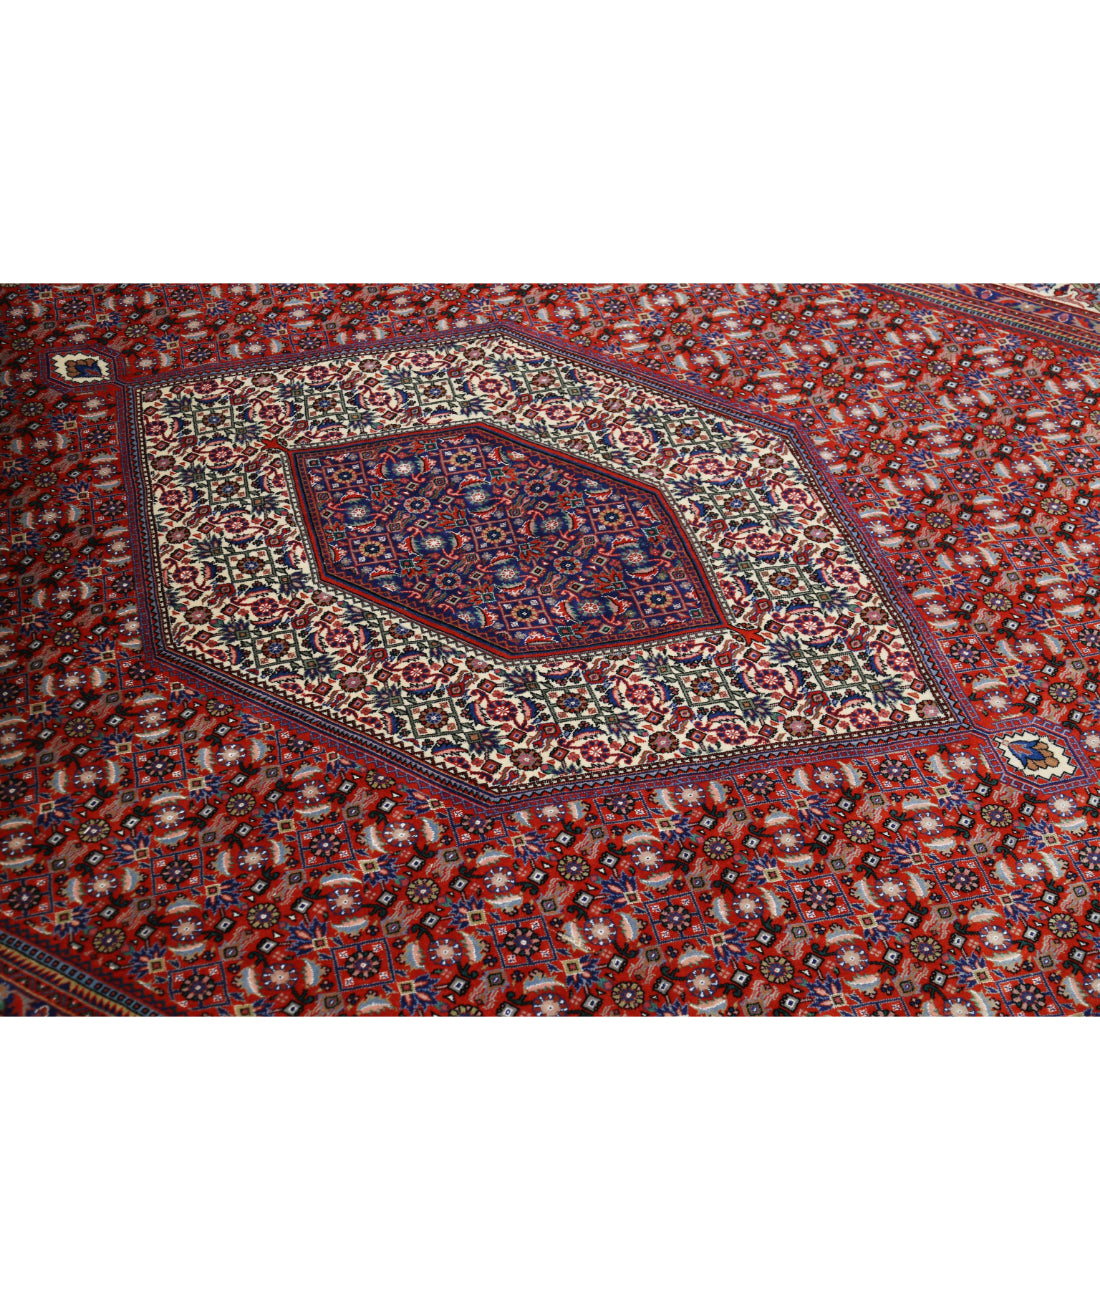 Hand Knotted Persian Bijar Wool & Silk Rug - 6'7'' x 9'10'' 6'7'' x 9'10'' (198 X 295) / Red / Ivory